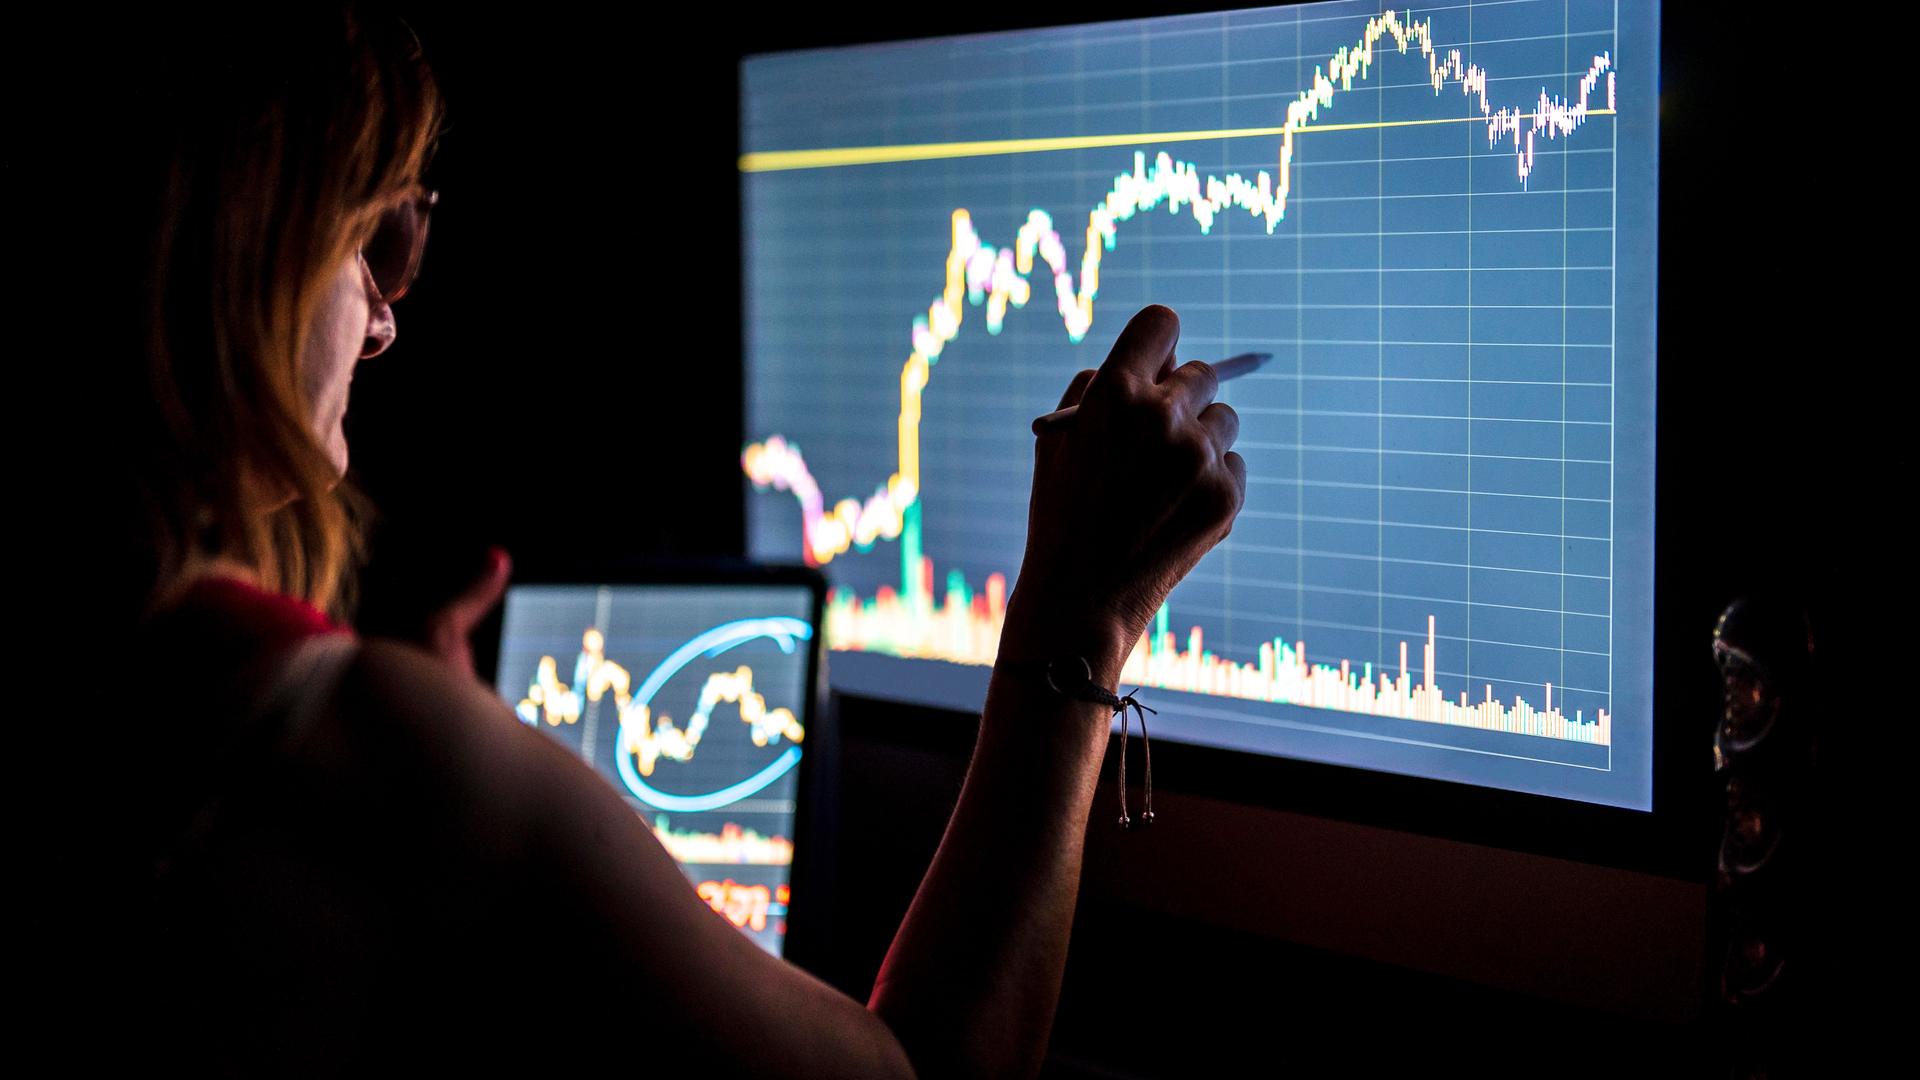 Eine Geschäftsfrau steht in einem dunklen Raum vor einem Monitor und hält ein Tablett in der Hand. Auf beiden Bildschirmen sieht man Finanzkurven